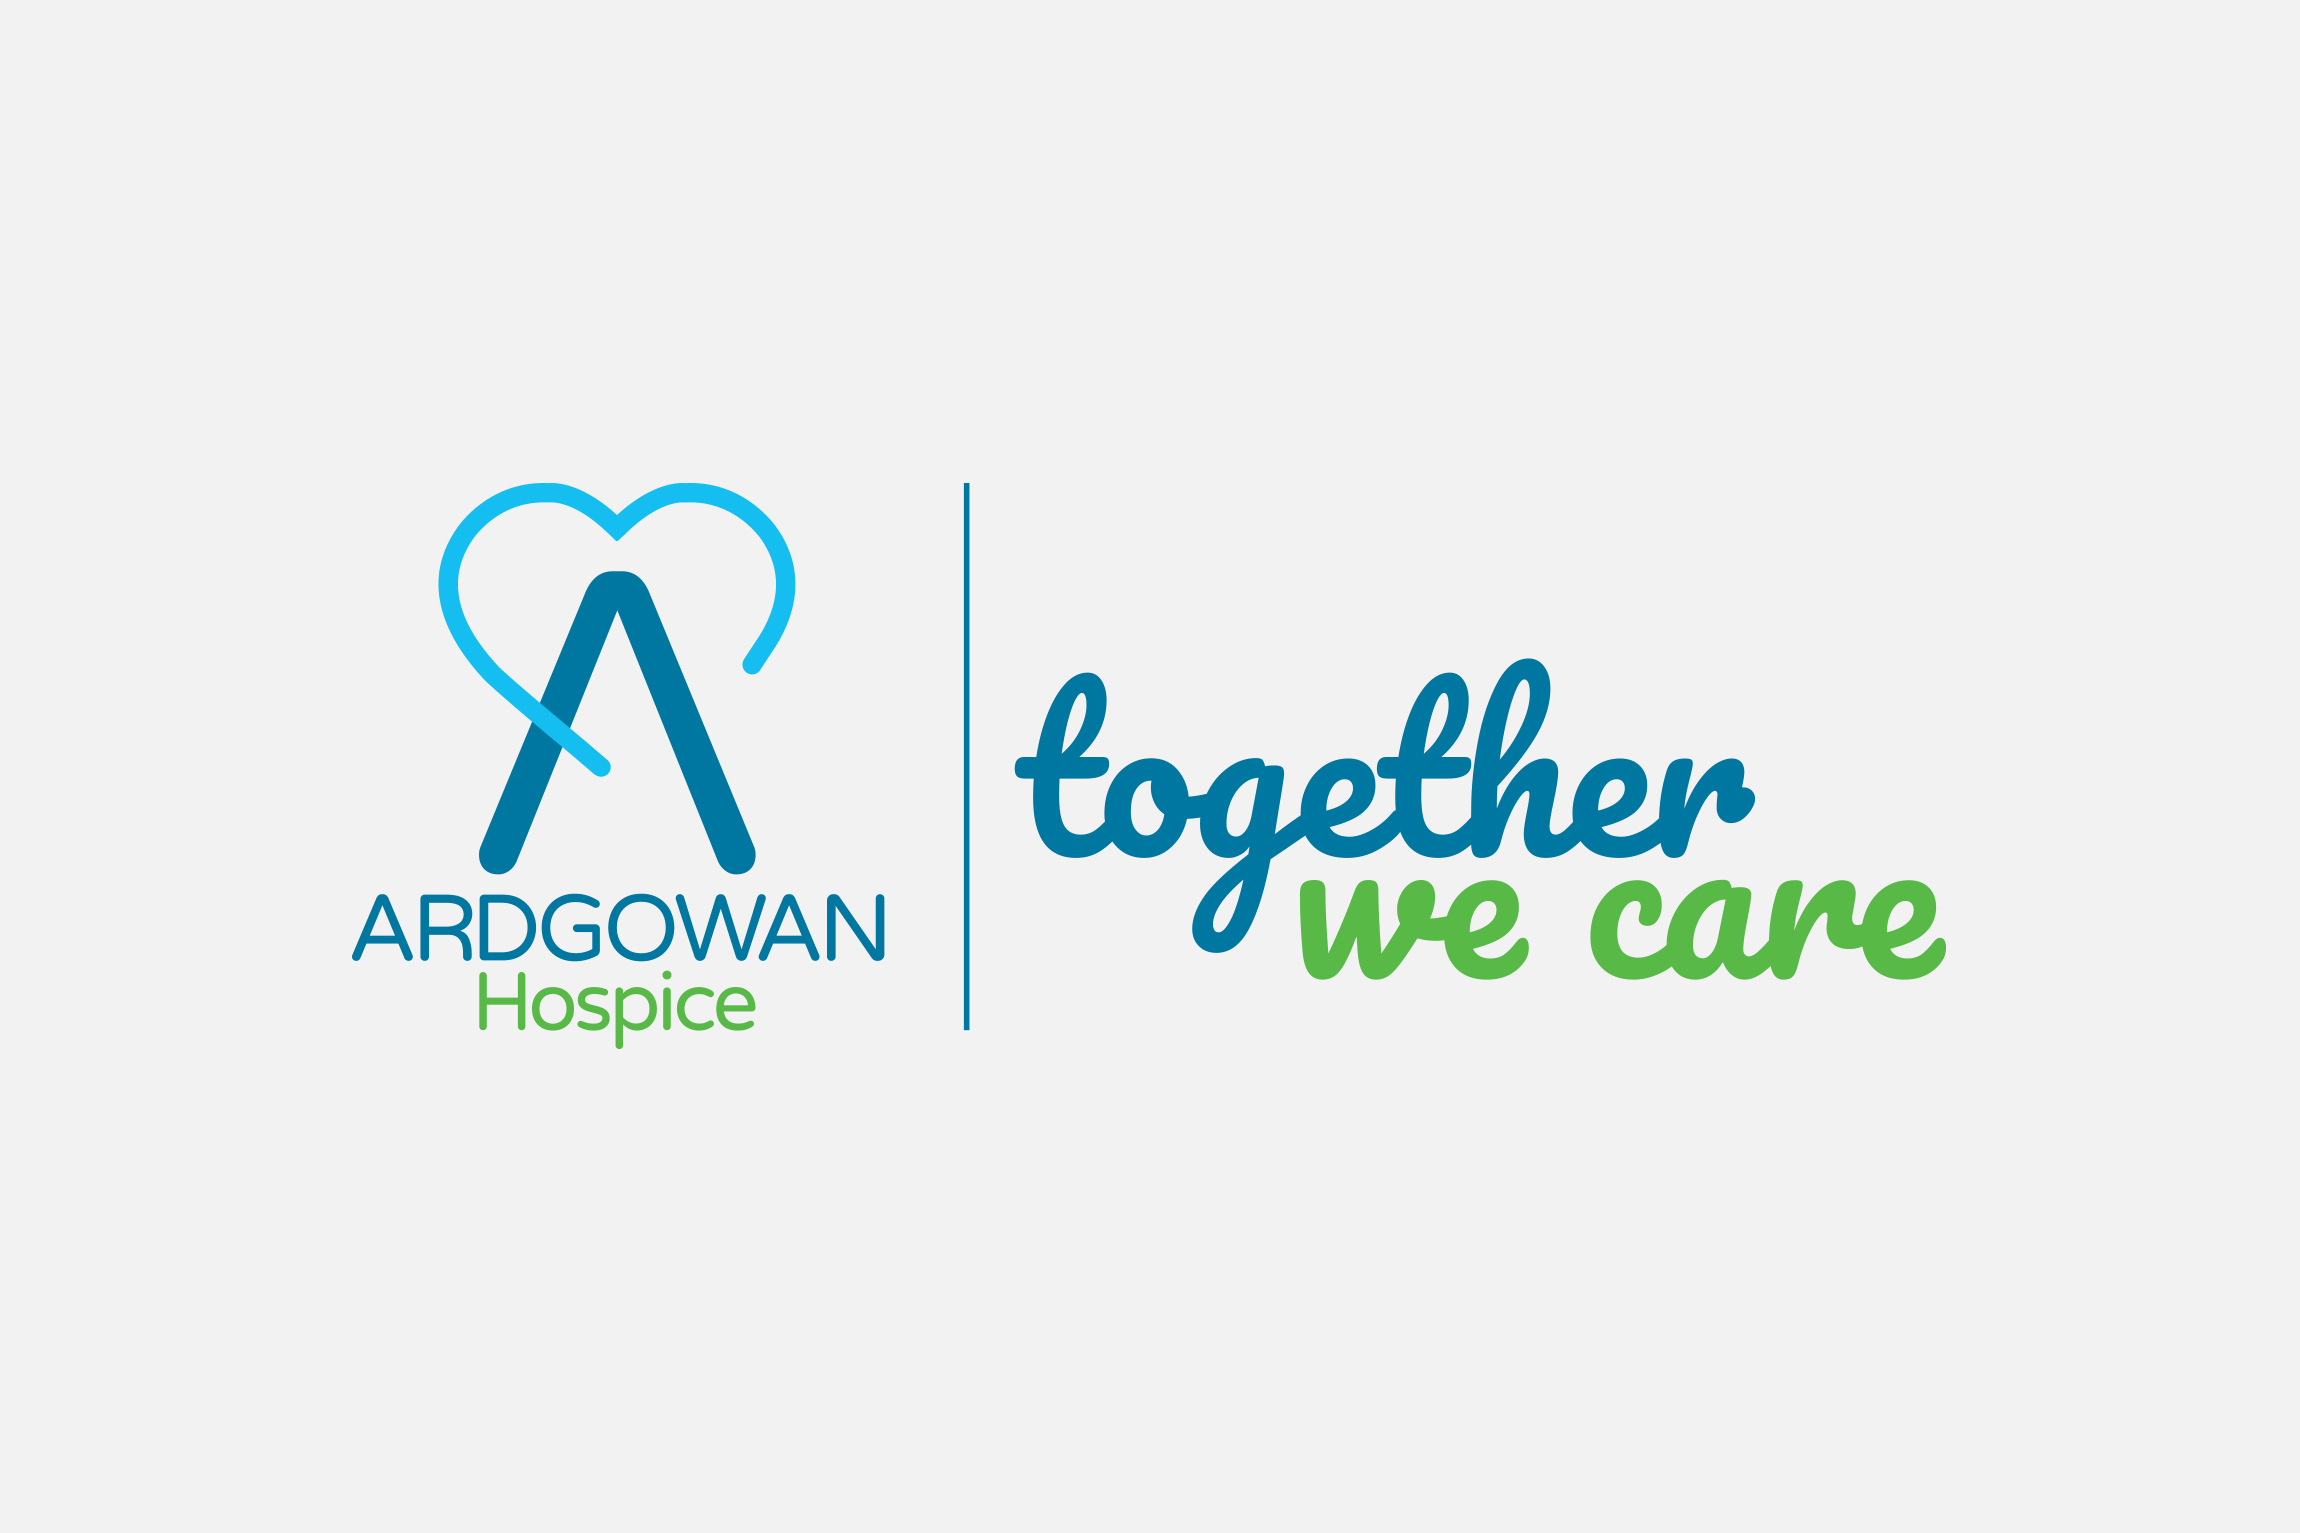 ardgowan-hospice-brand-identity-strapline